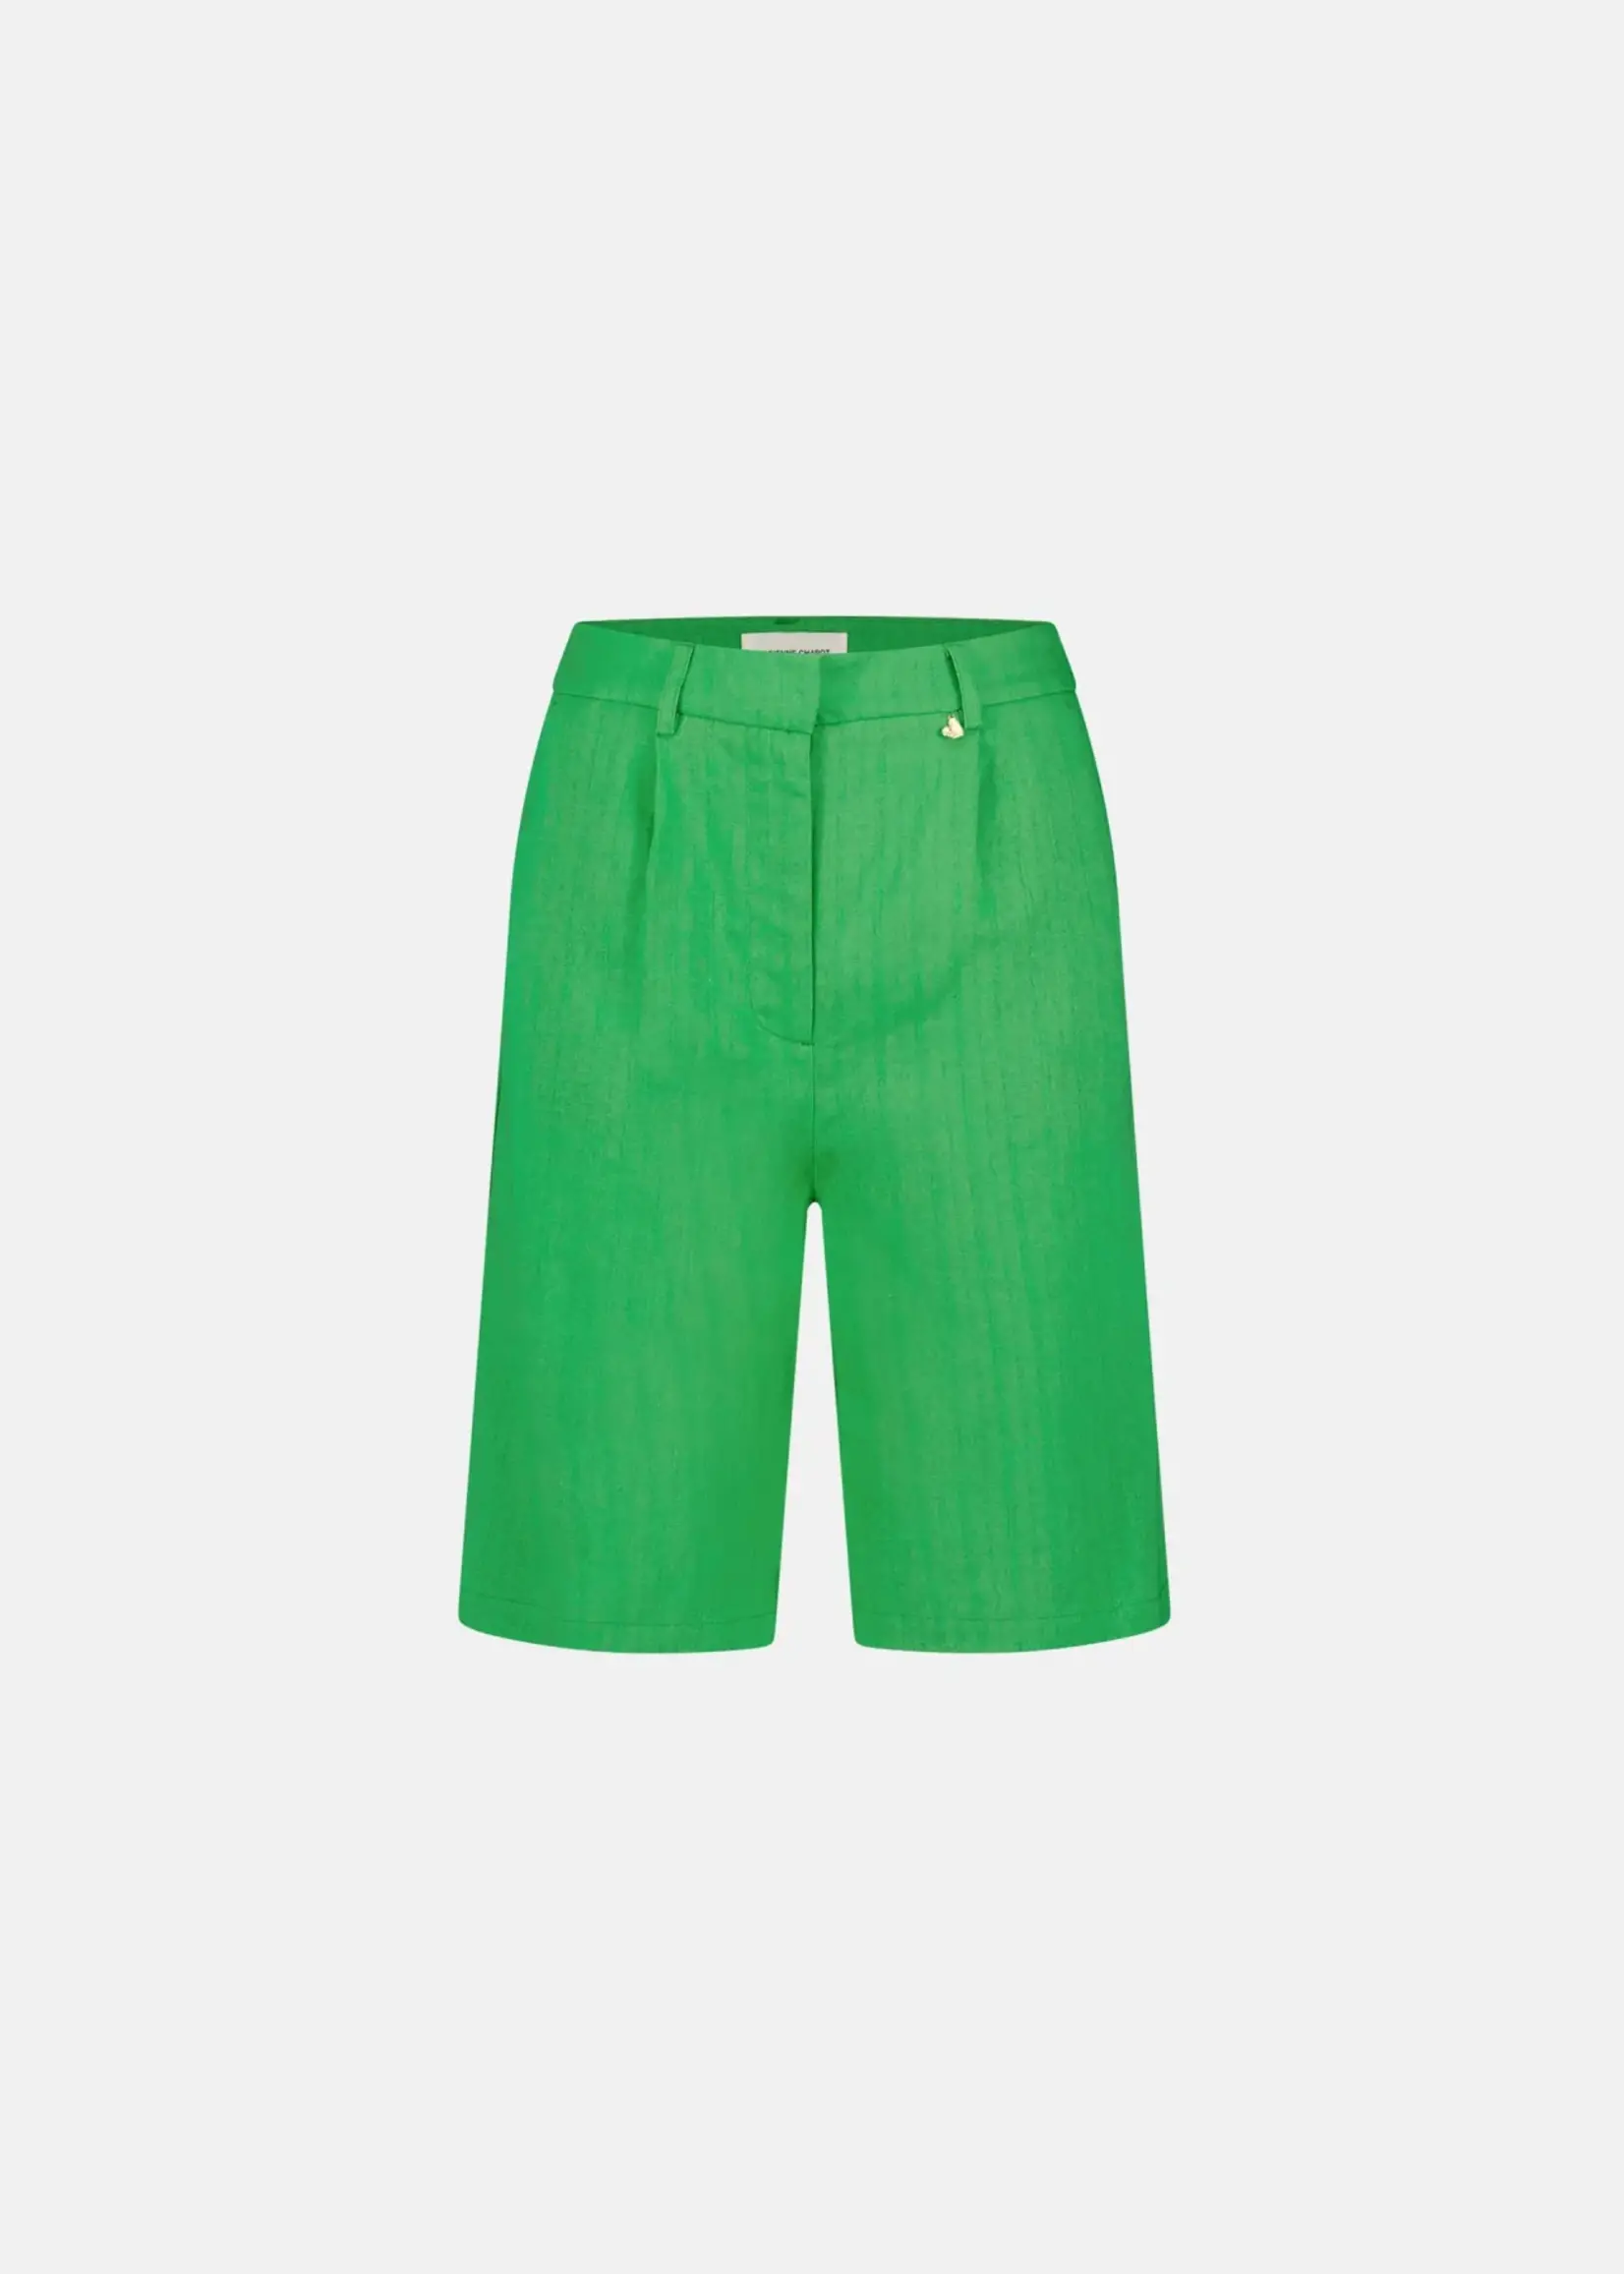 Fabienne Chapot Shorts Green Apple